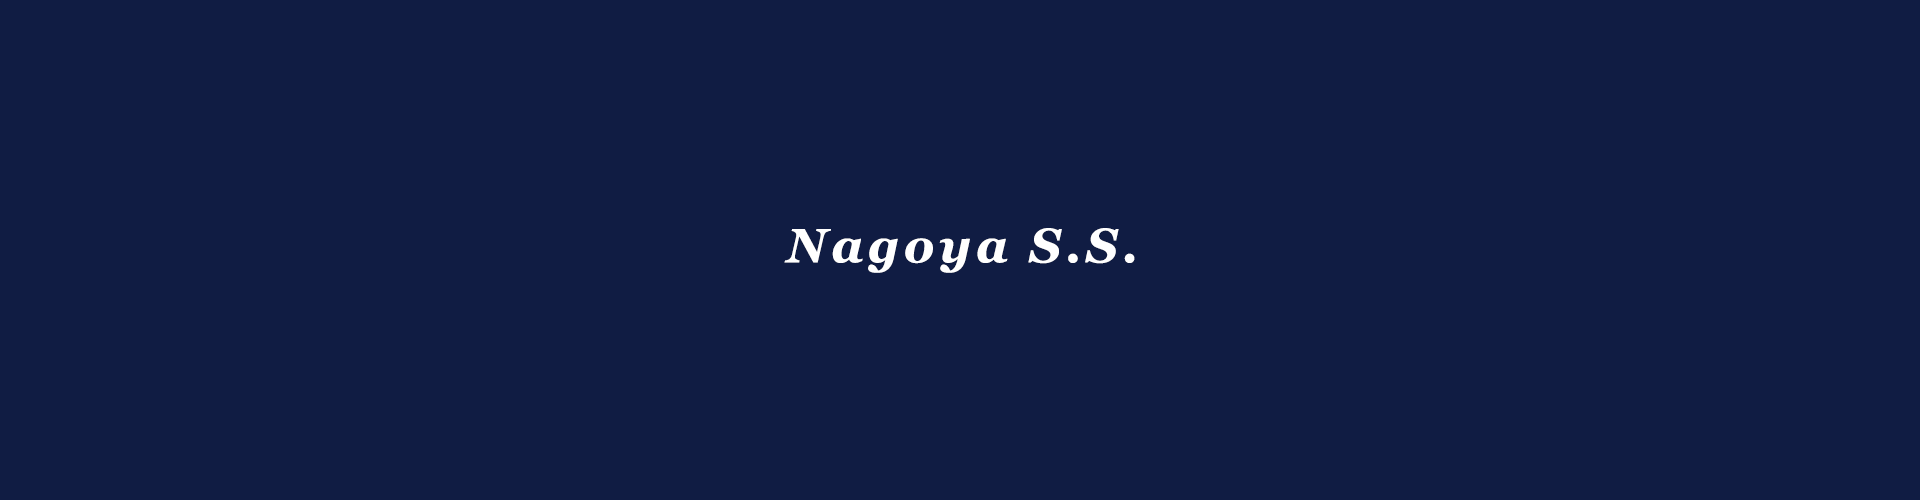 Nagoya S.S